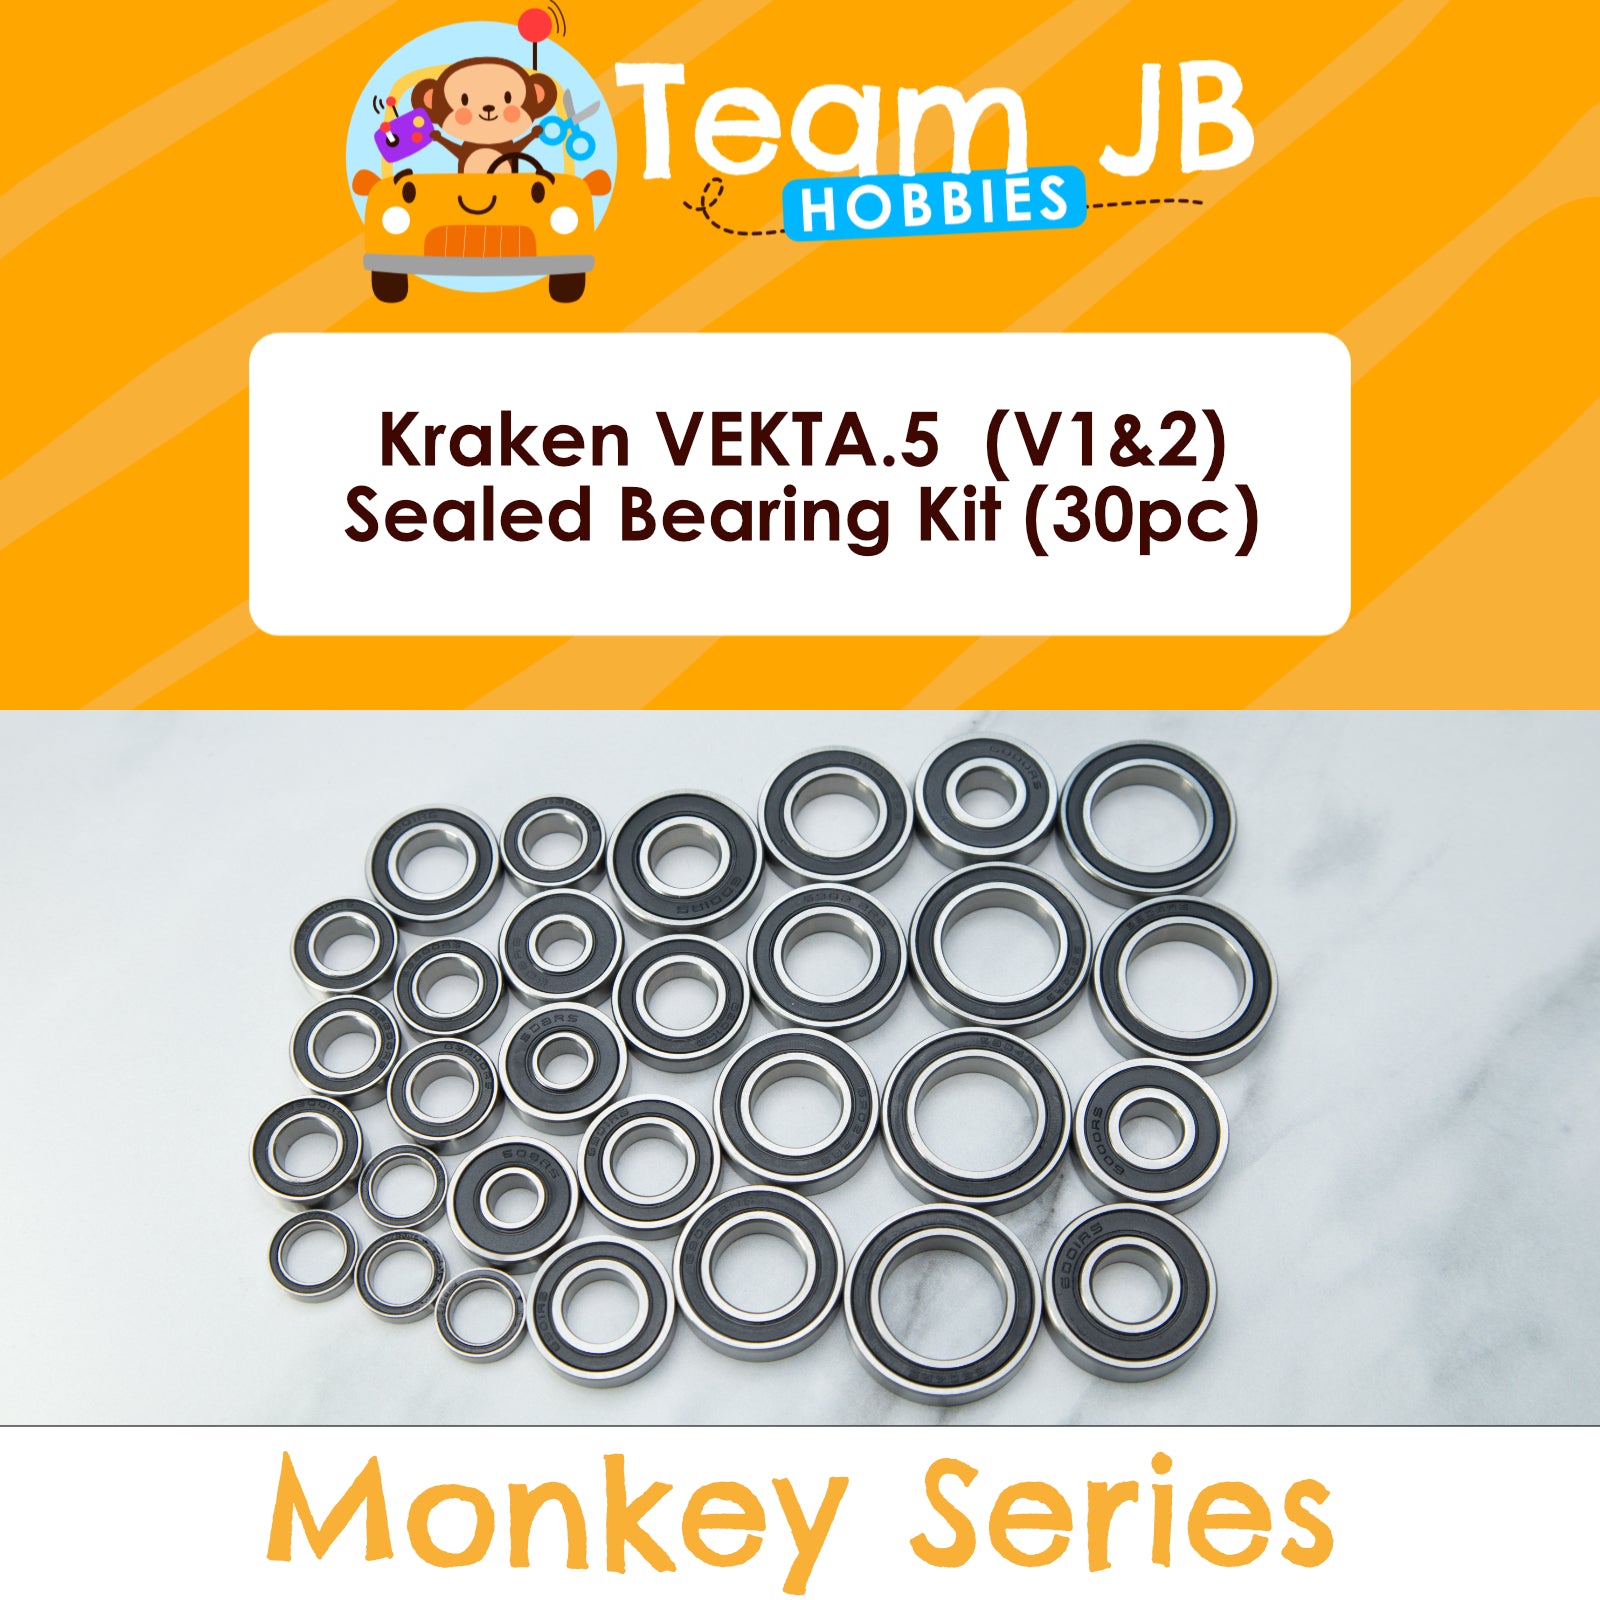 Kraken VEKTA.5  (V1&2) - Sealed Bearing Kit